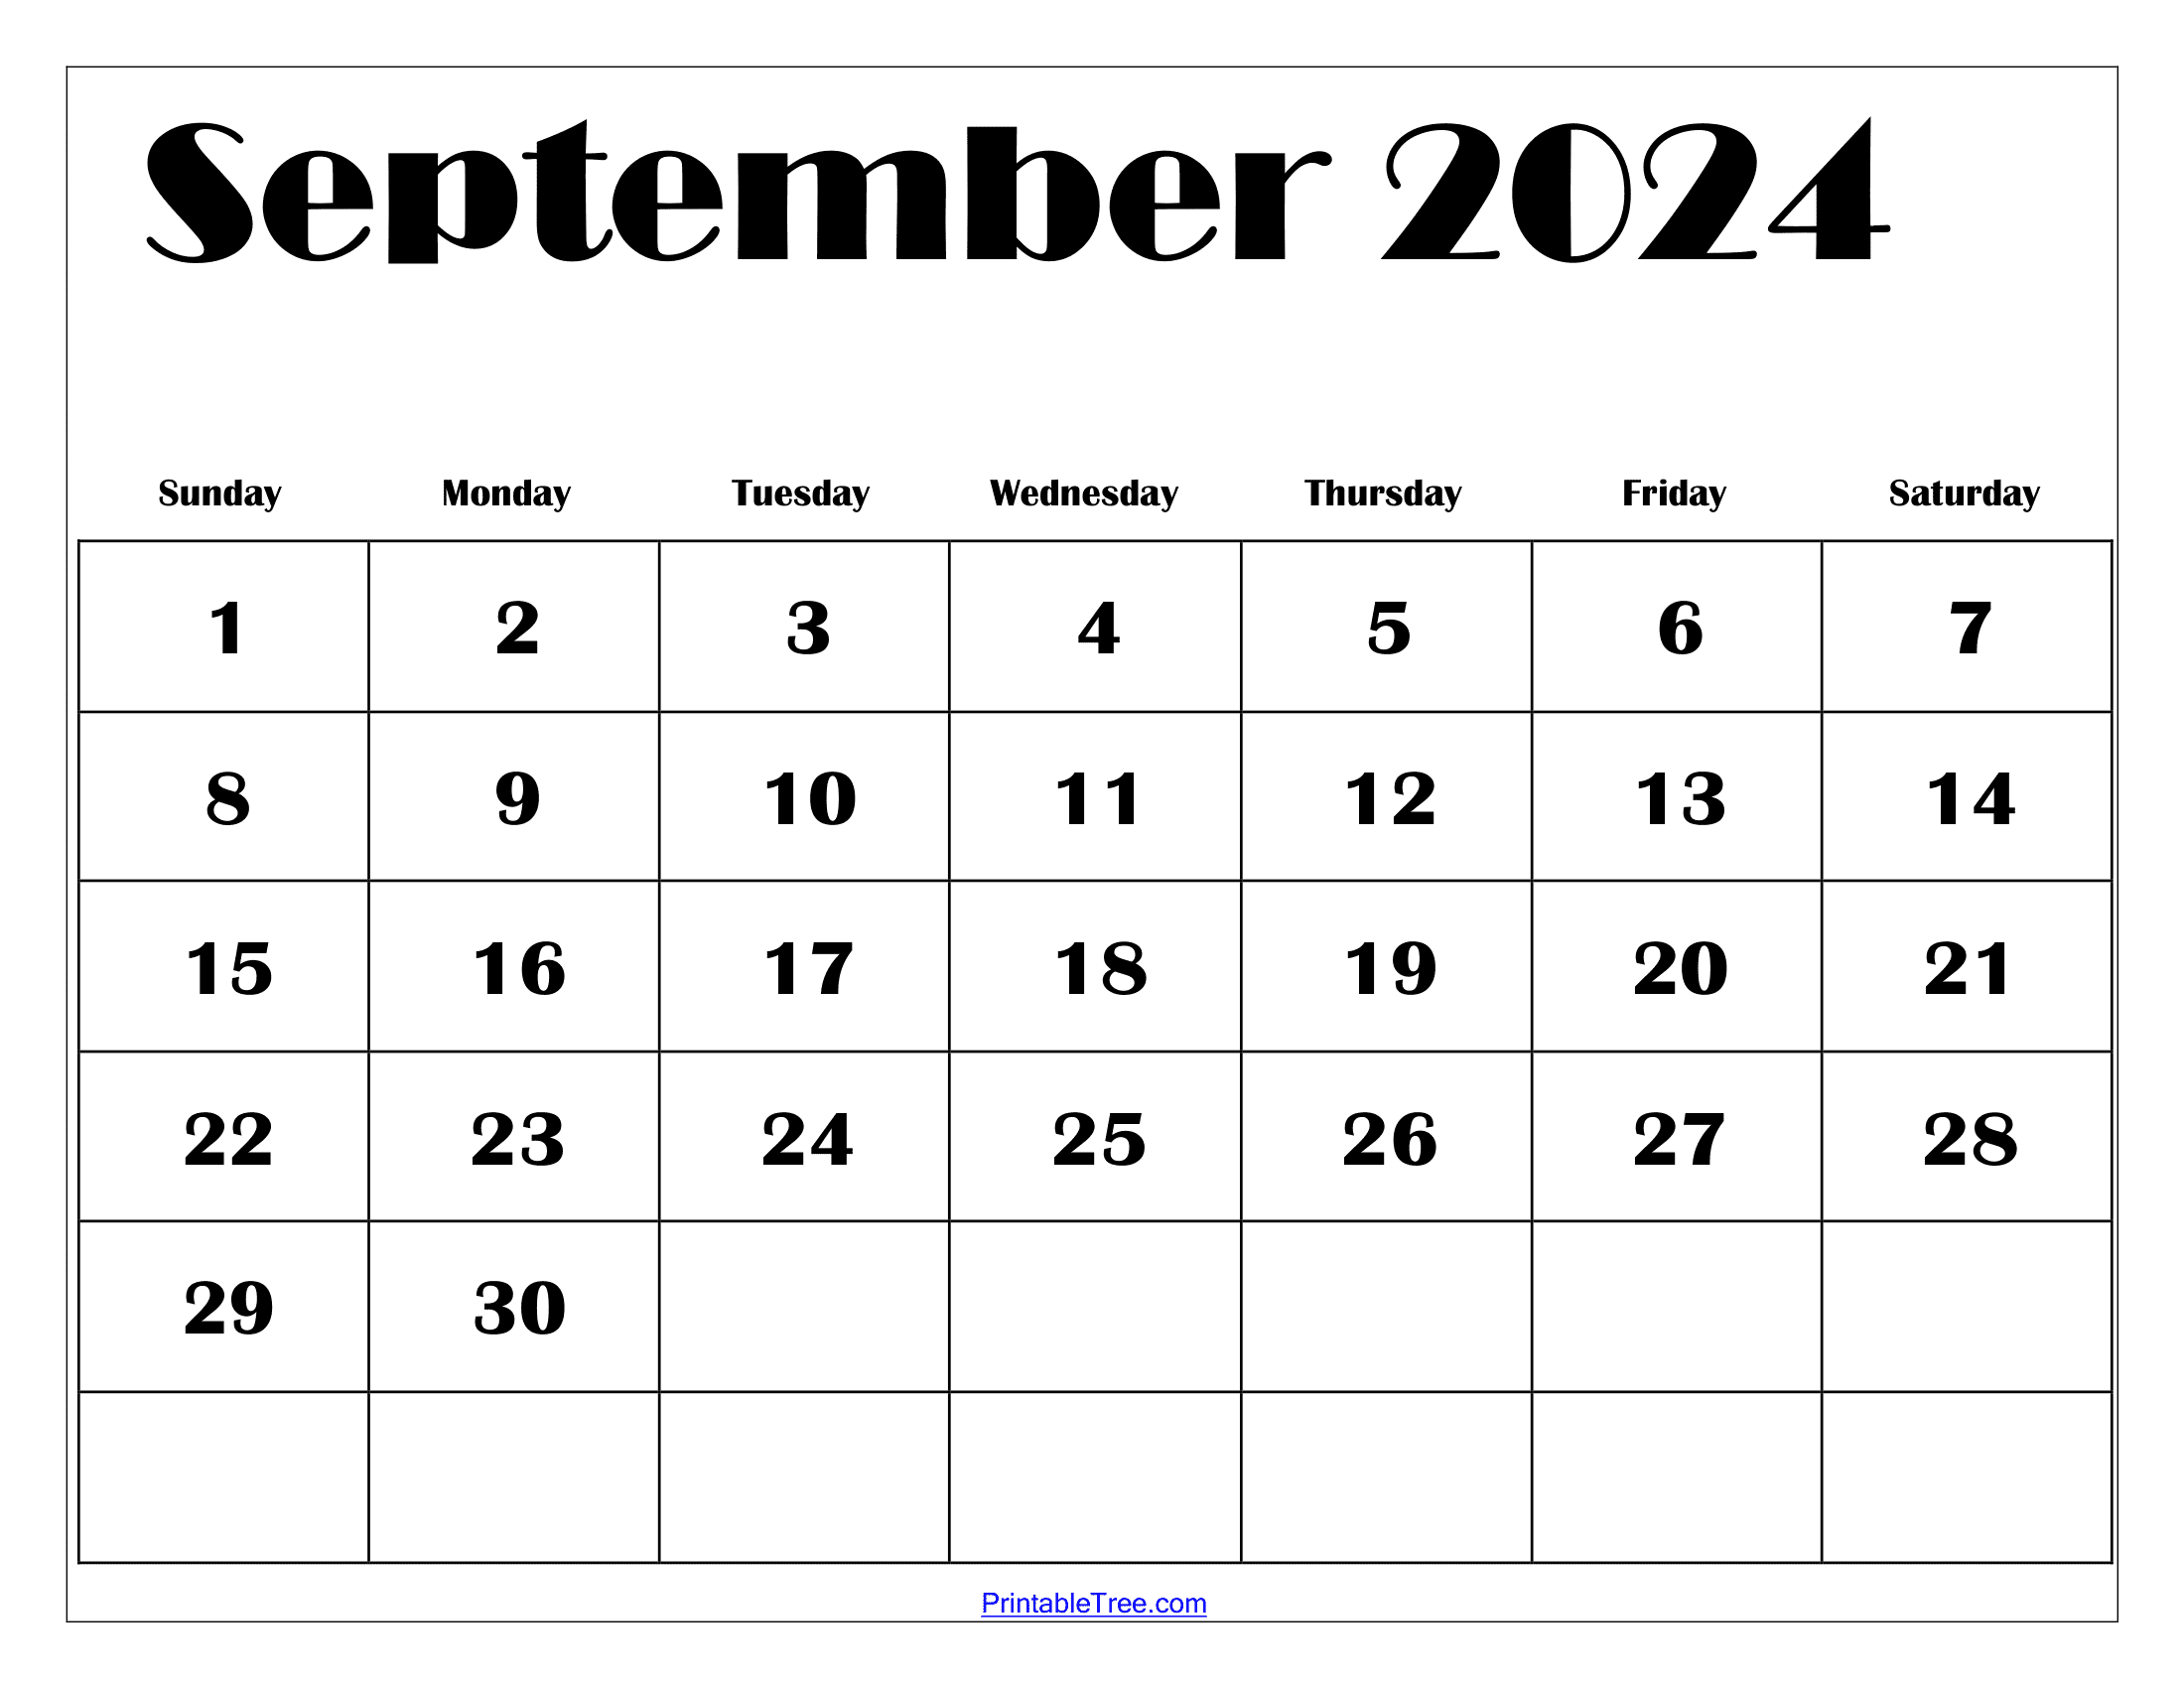 Calendar For September 2024 Etti Olivie - Free Printable 2024 Calendar September 24calendars